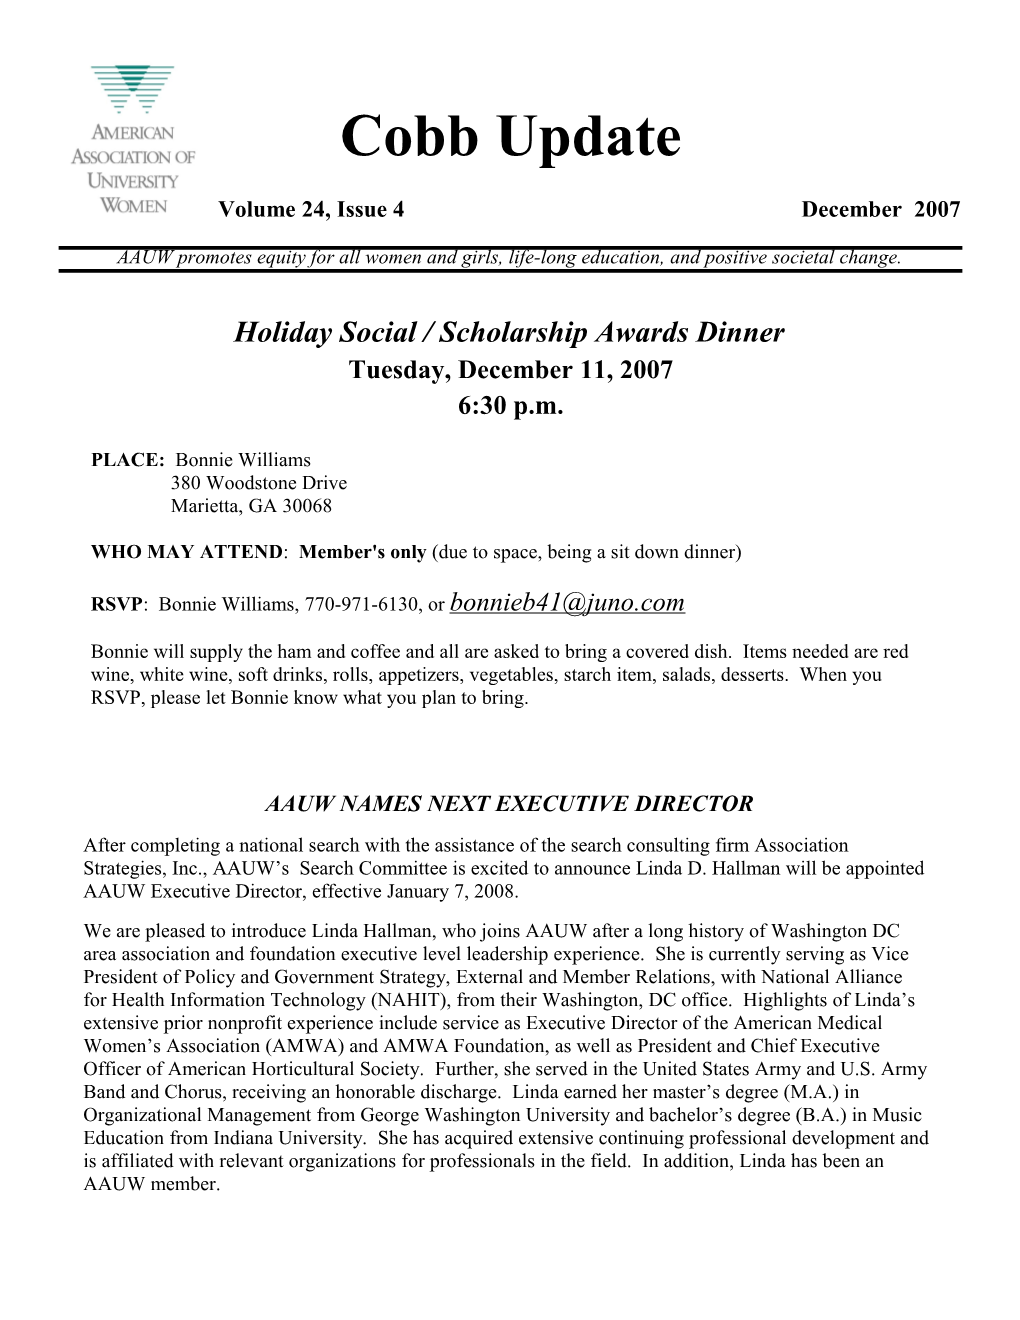 Holiday Social / Scholarship Awards Dinner